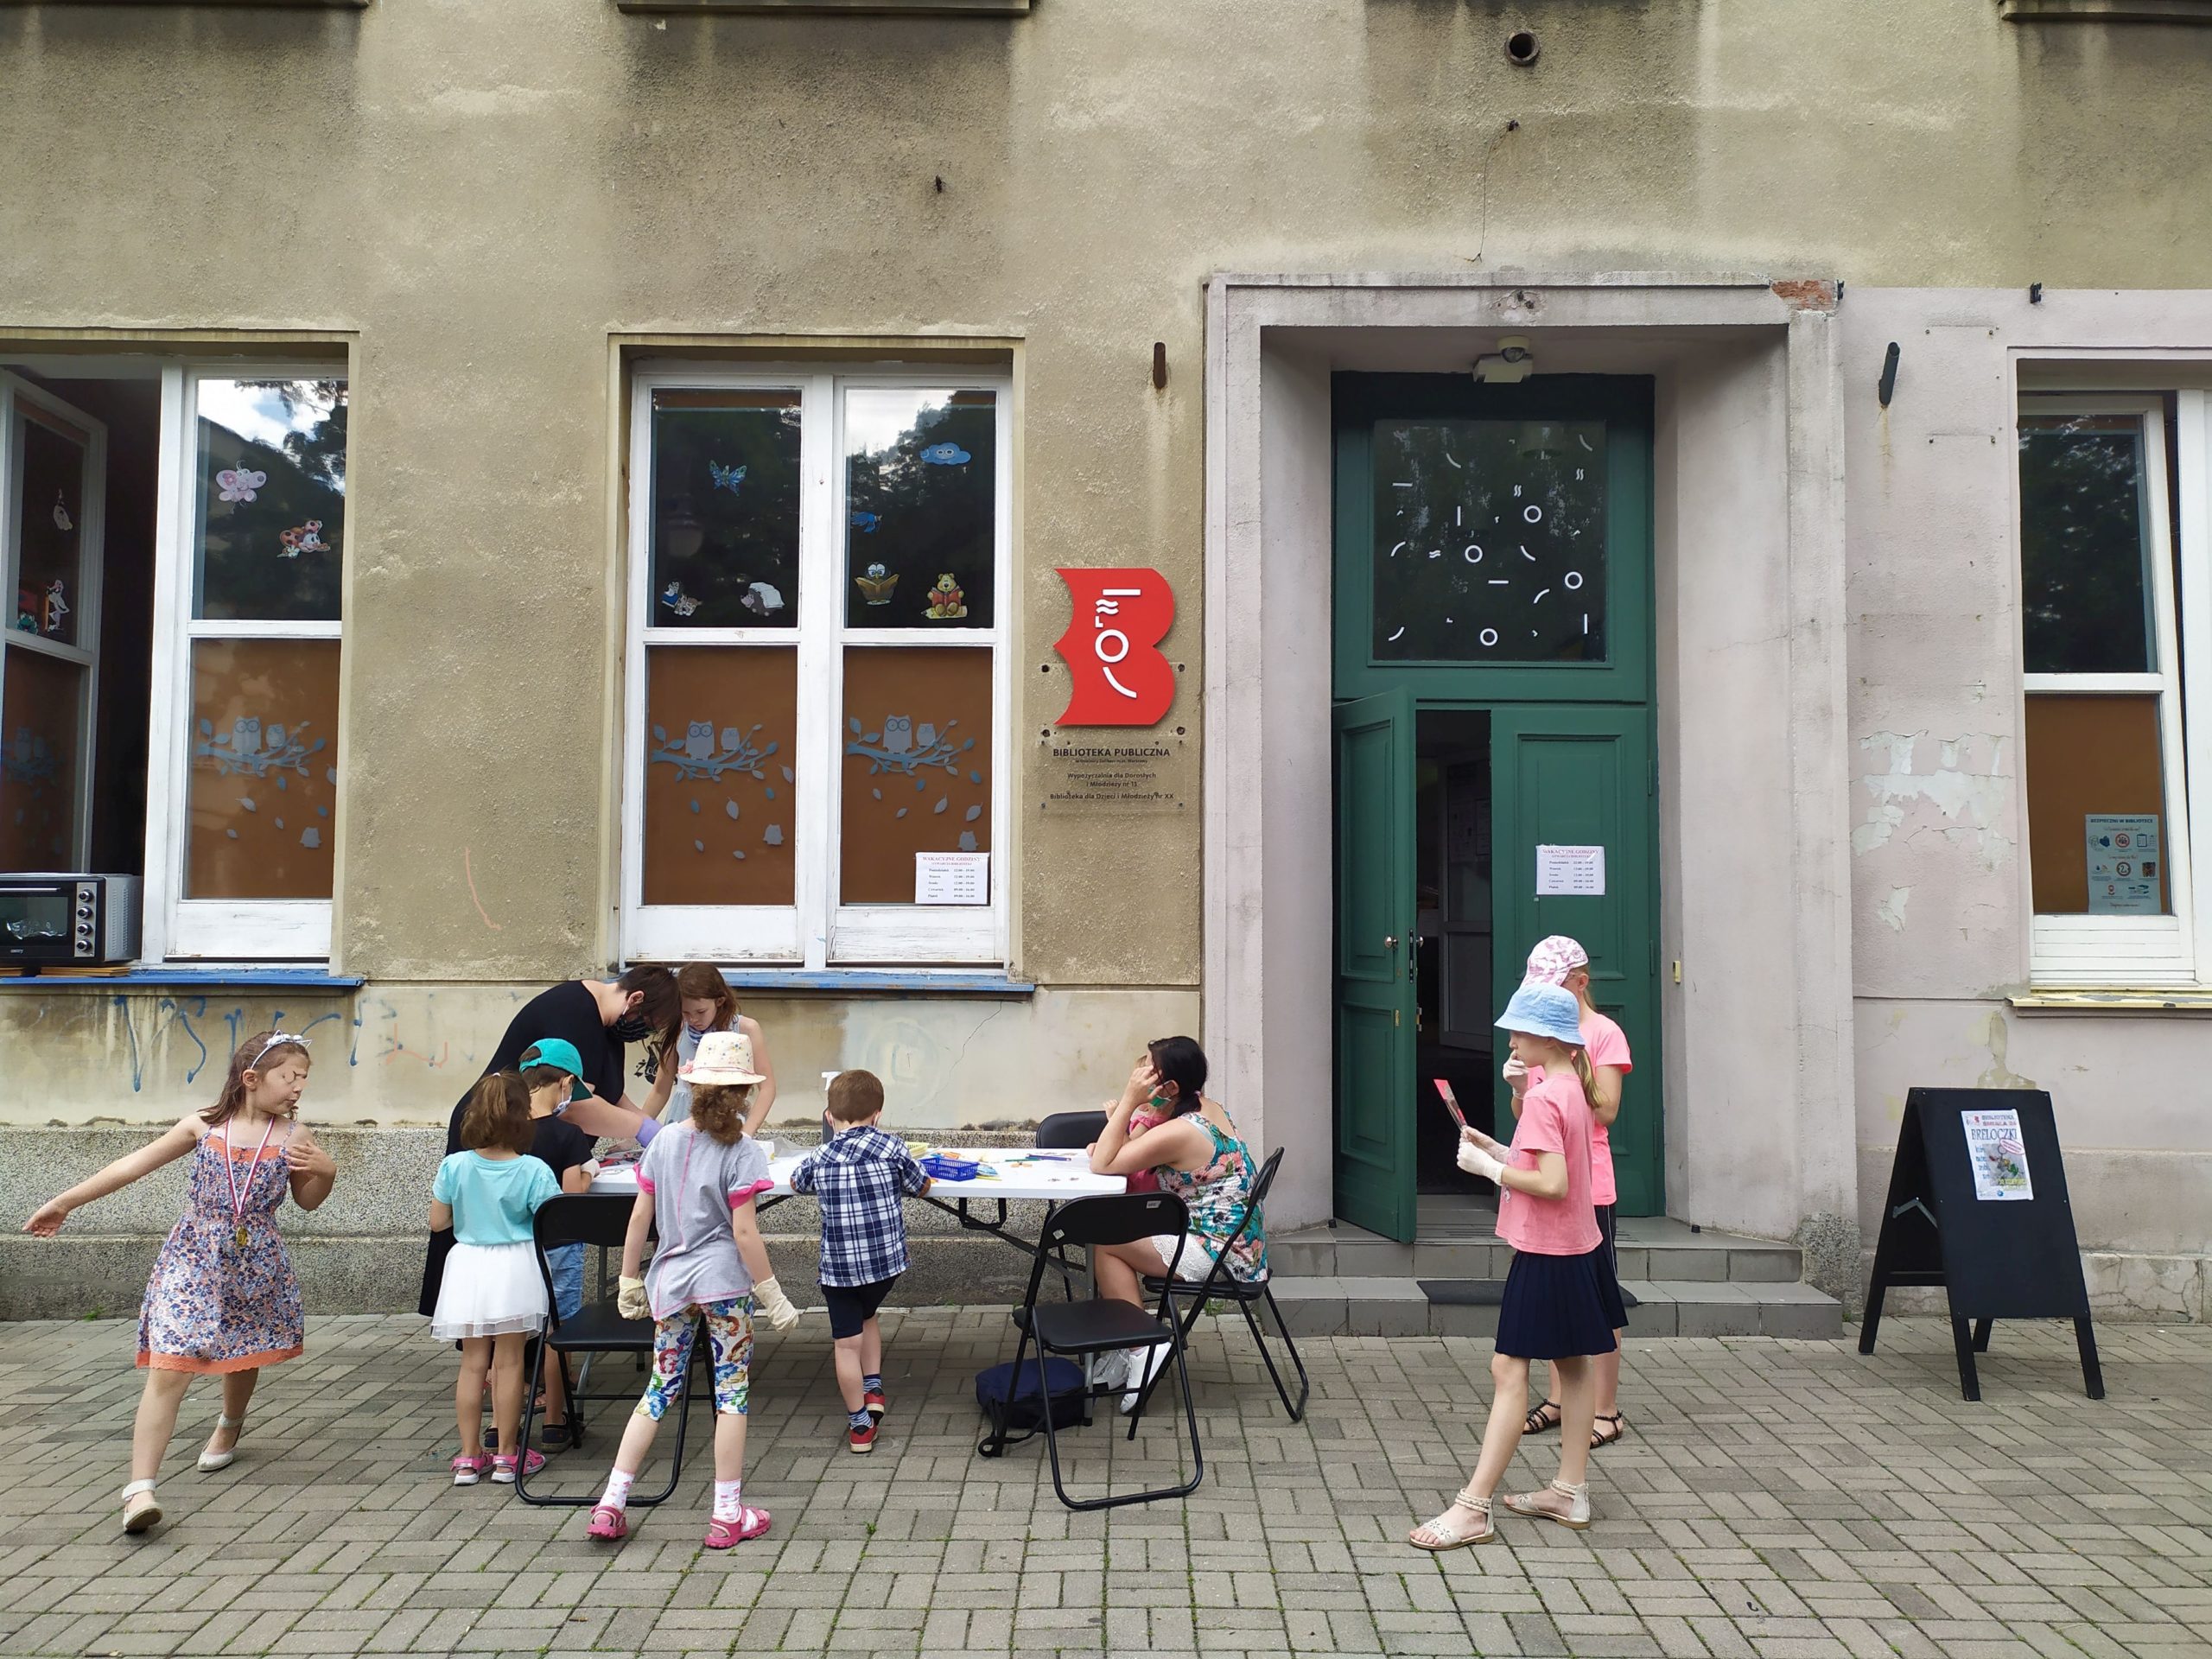 Biblioteka przy ul. Śmiałej 24 widok z zewnątrz na wejście główne. Grupa dzieci bierze udział w warsztatach prowadzonych przed Biblioteką